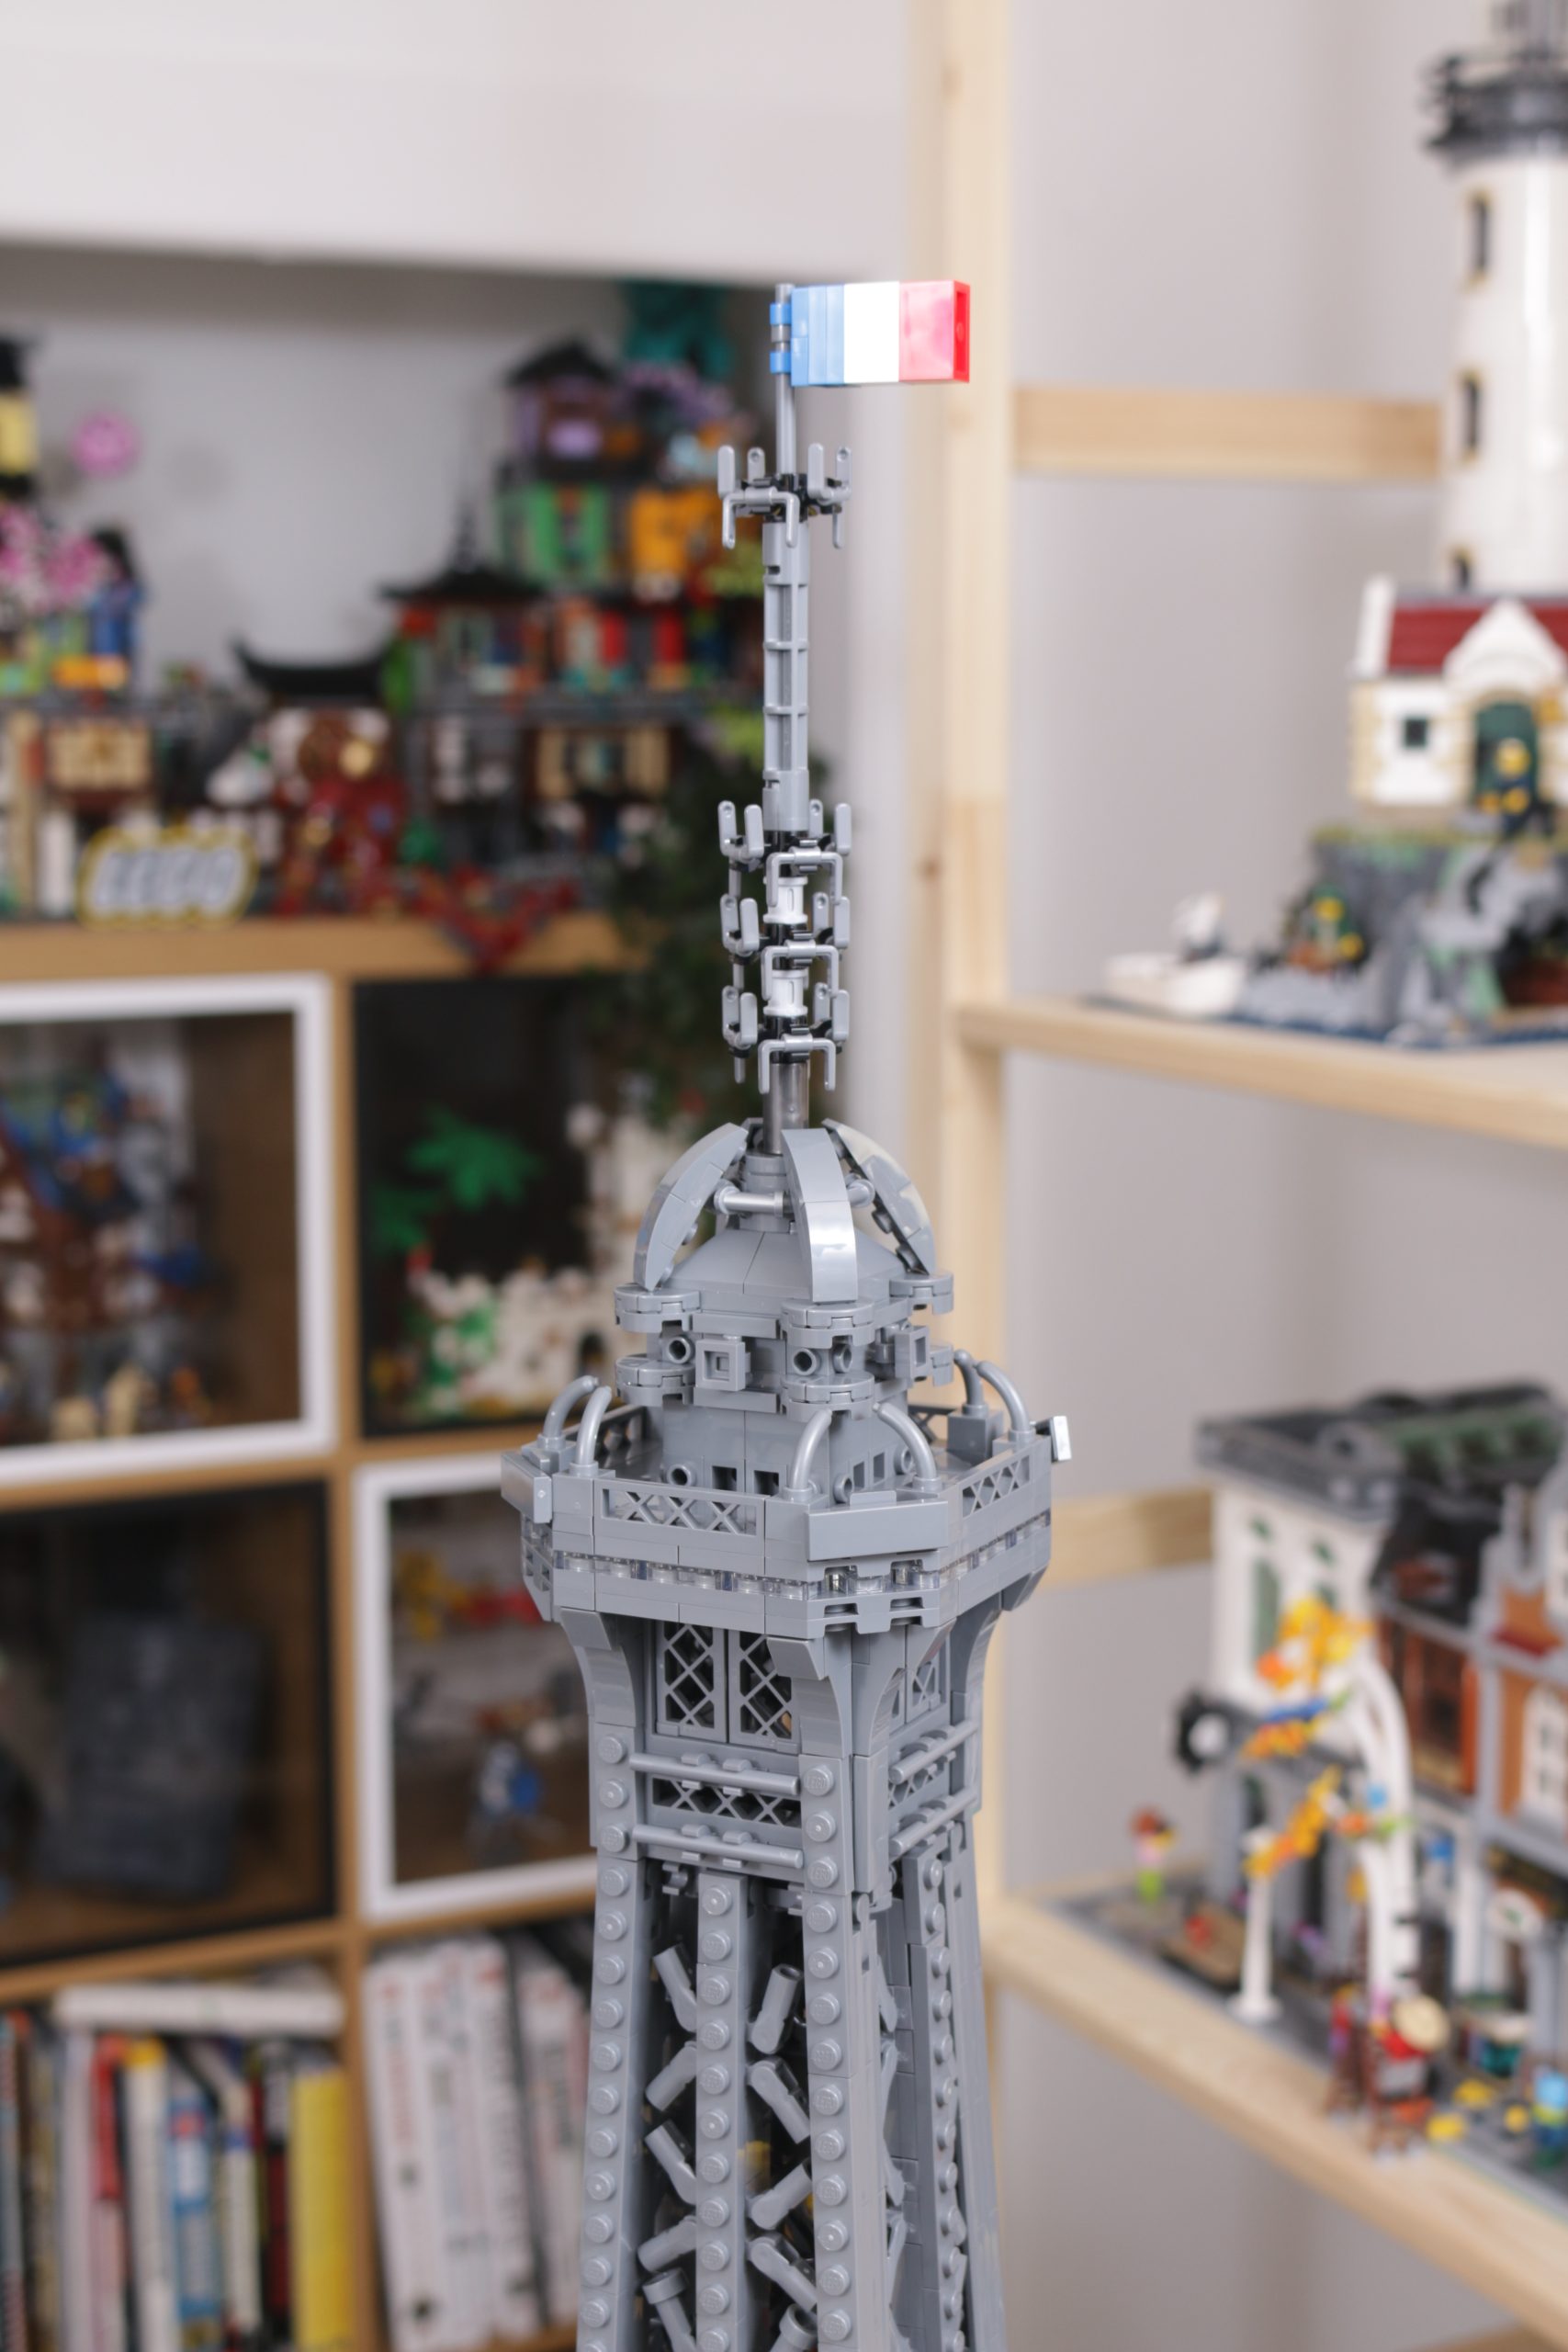 LEGO Icons 10307 Tour Eiffel examen complet et galerie